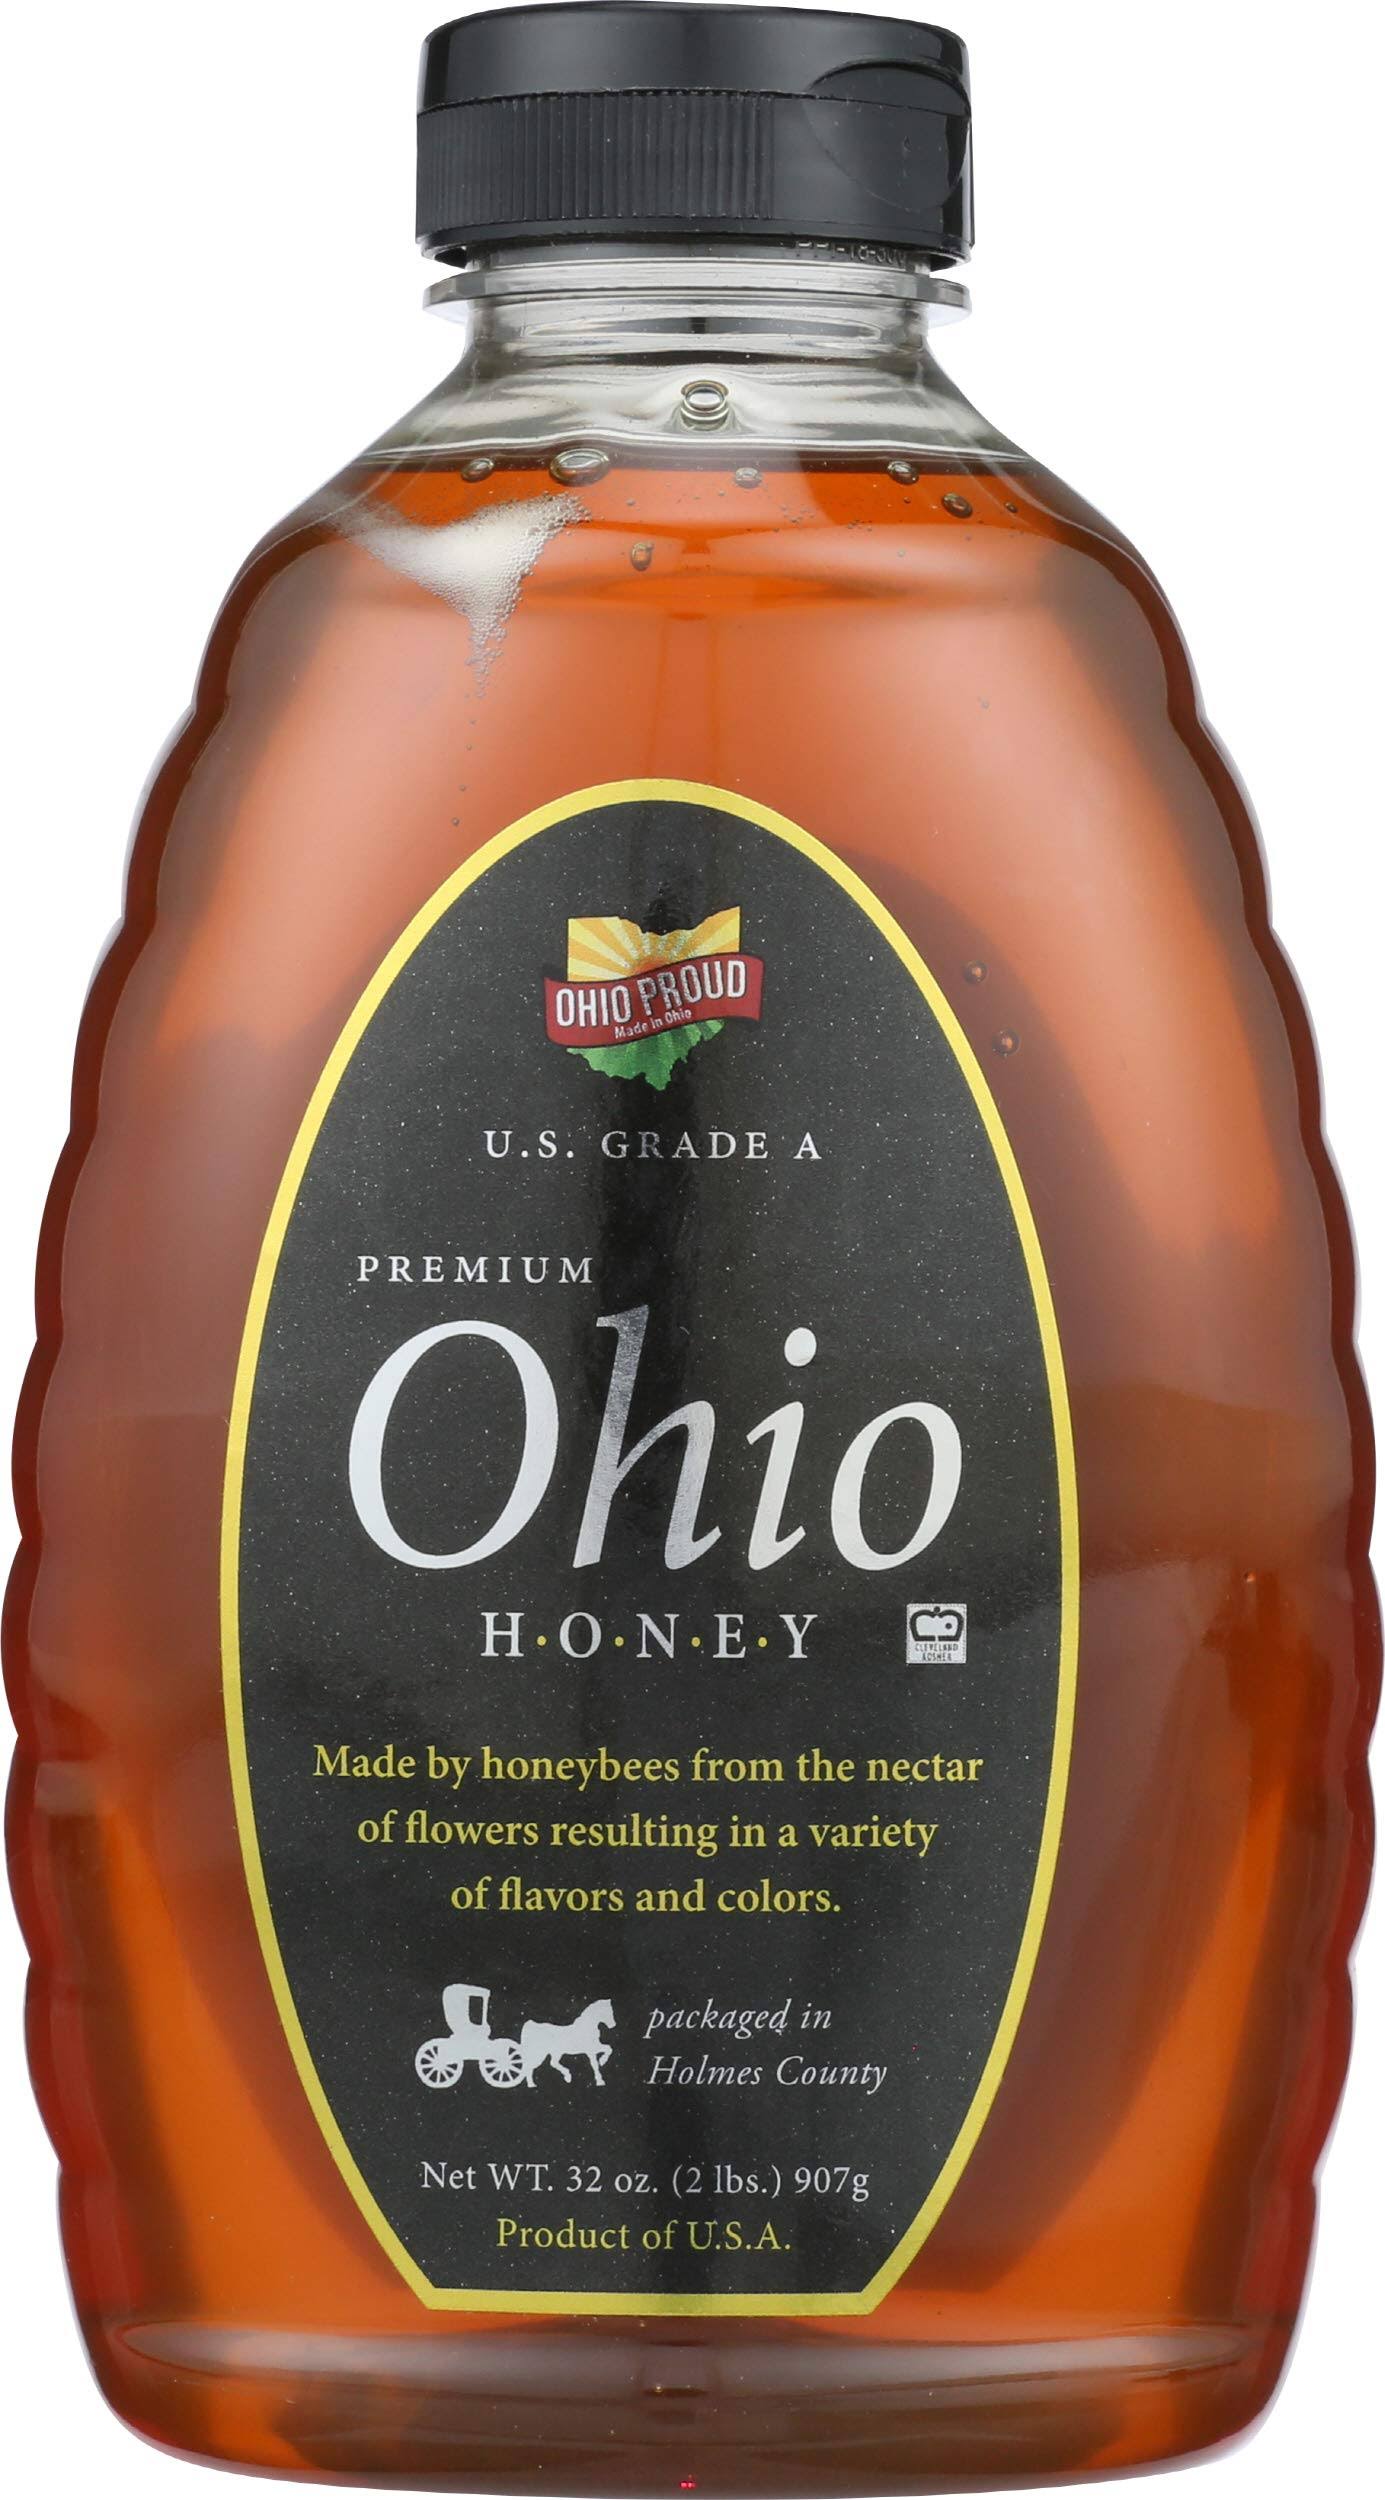 TONNS Honey Ohio Premium, 32 OZ